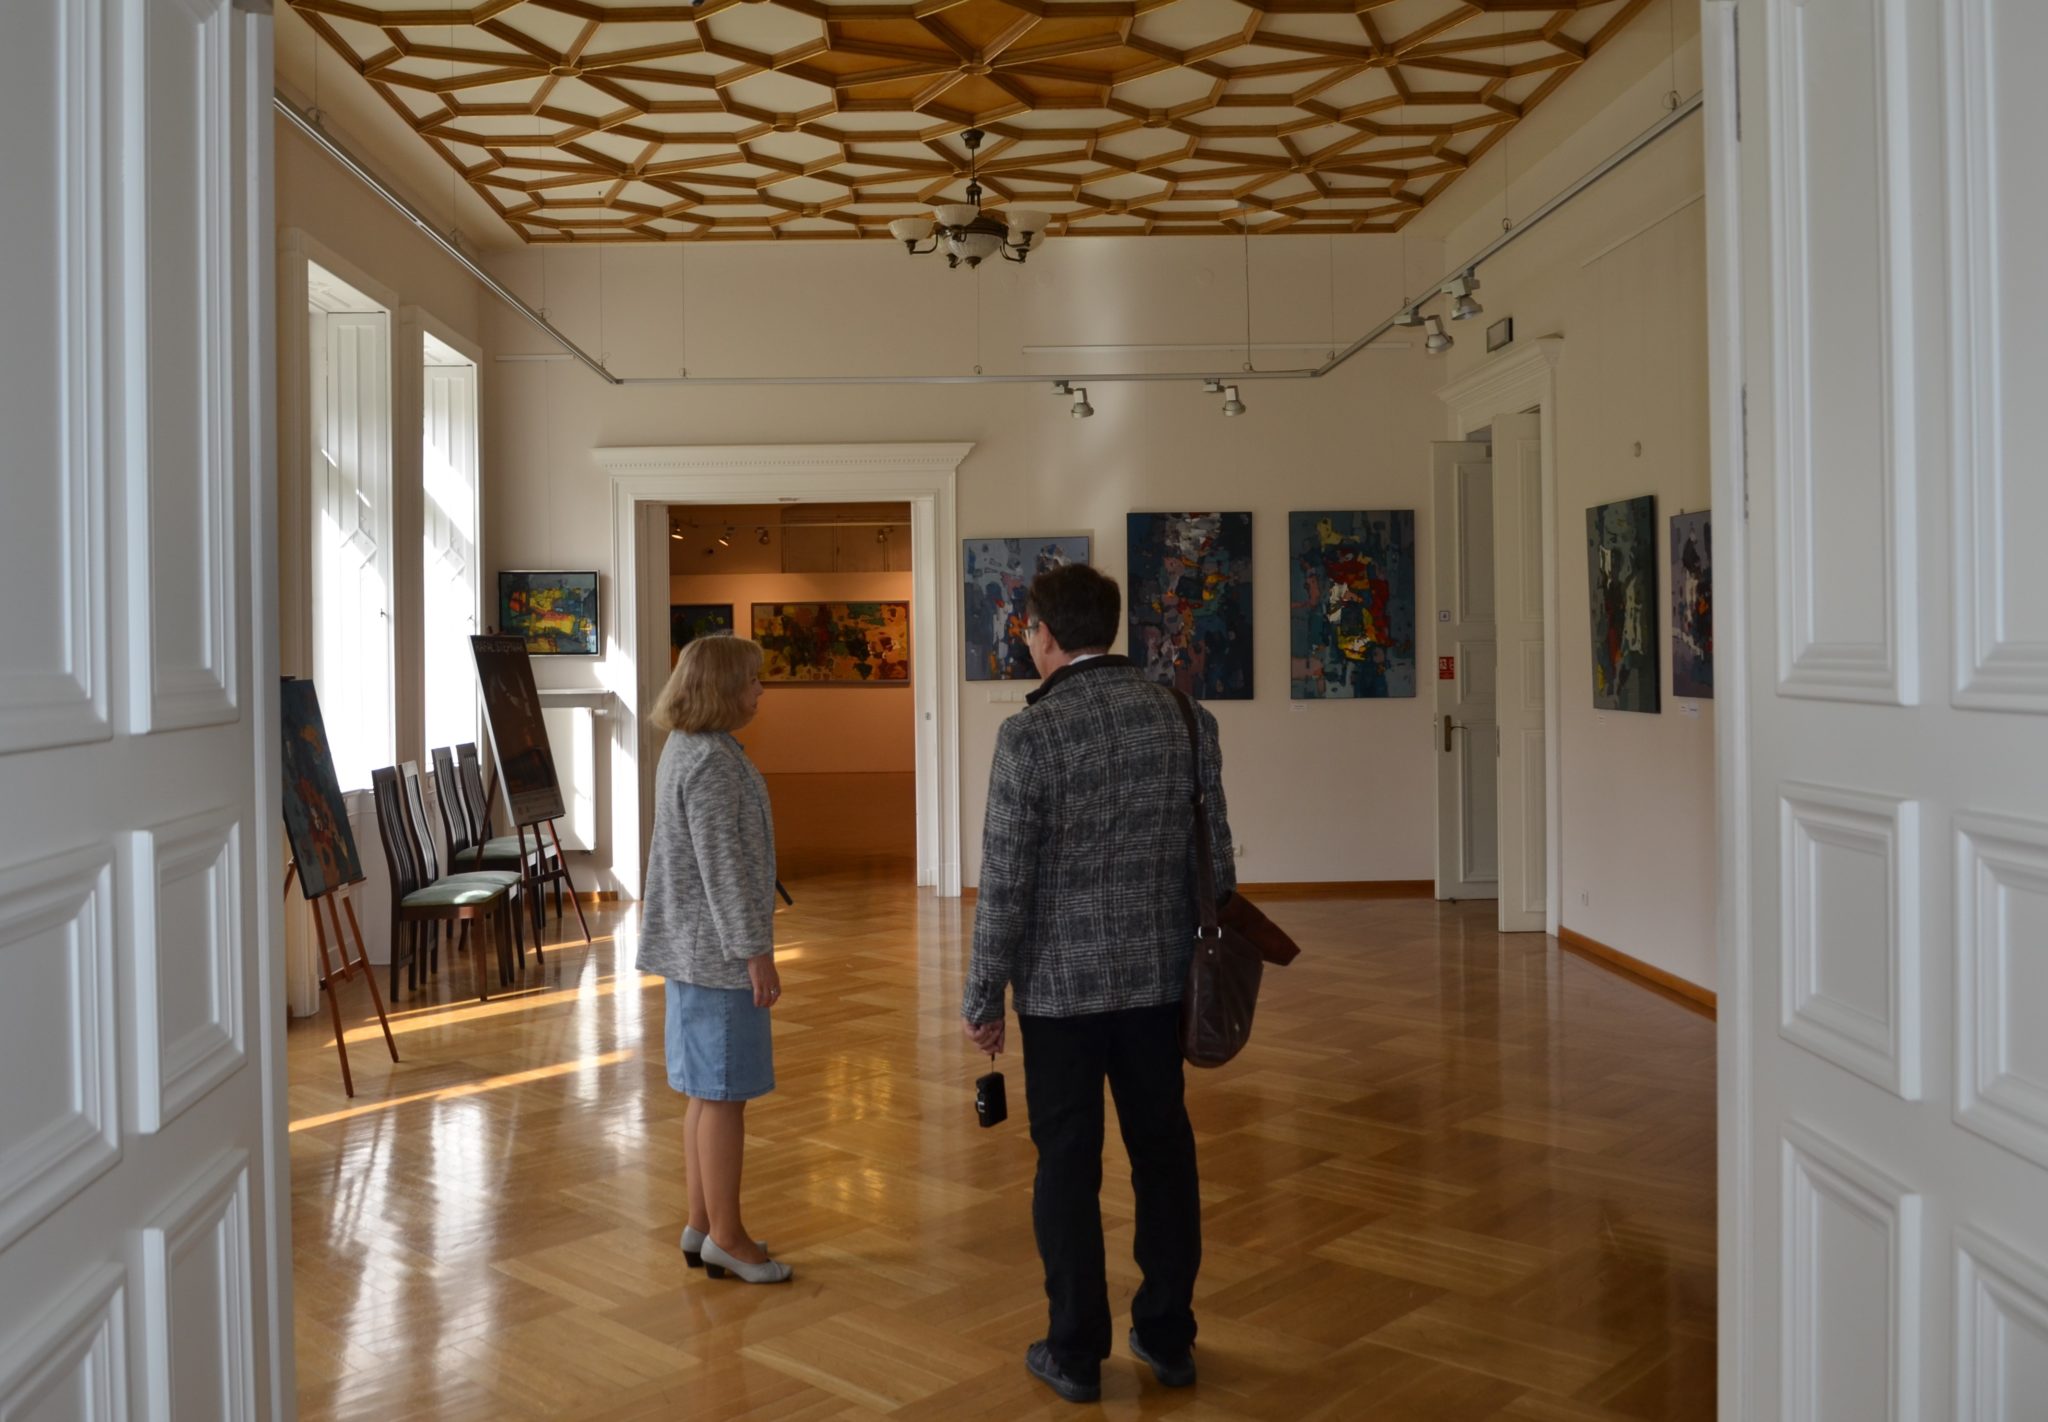 Kobieta i mężczyzna stoją w pomieszczeniu, którego sufit jest dekoracyjnie zdobiony, a na ścianach wiszą obrazy.